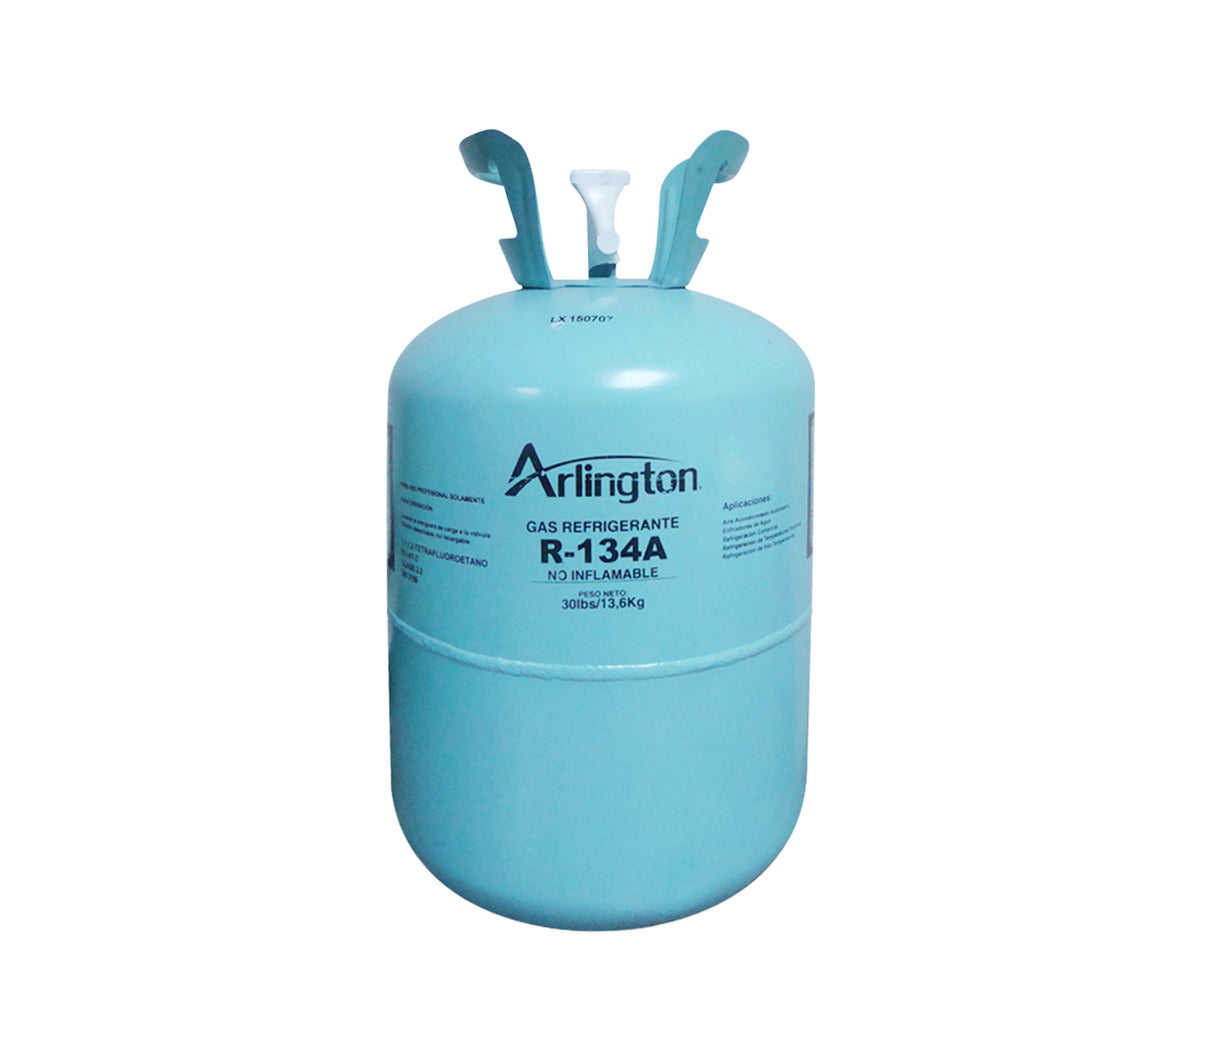 Gas refrigerante R-134A 13.6 KG Arlington